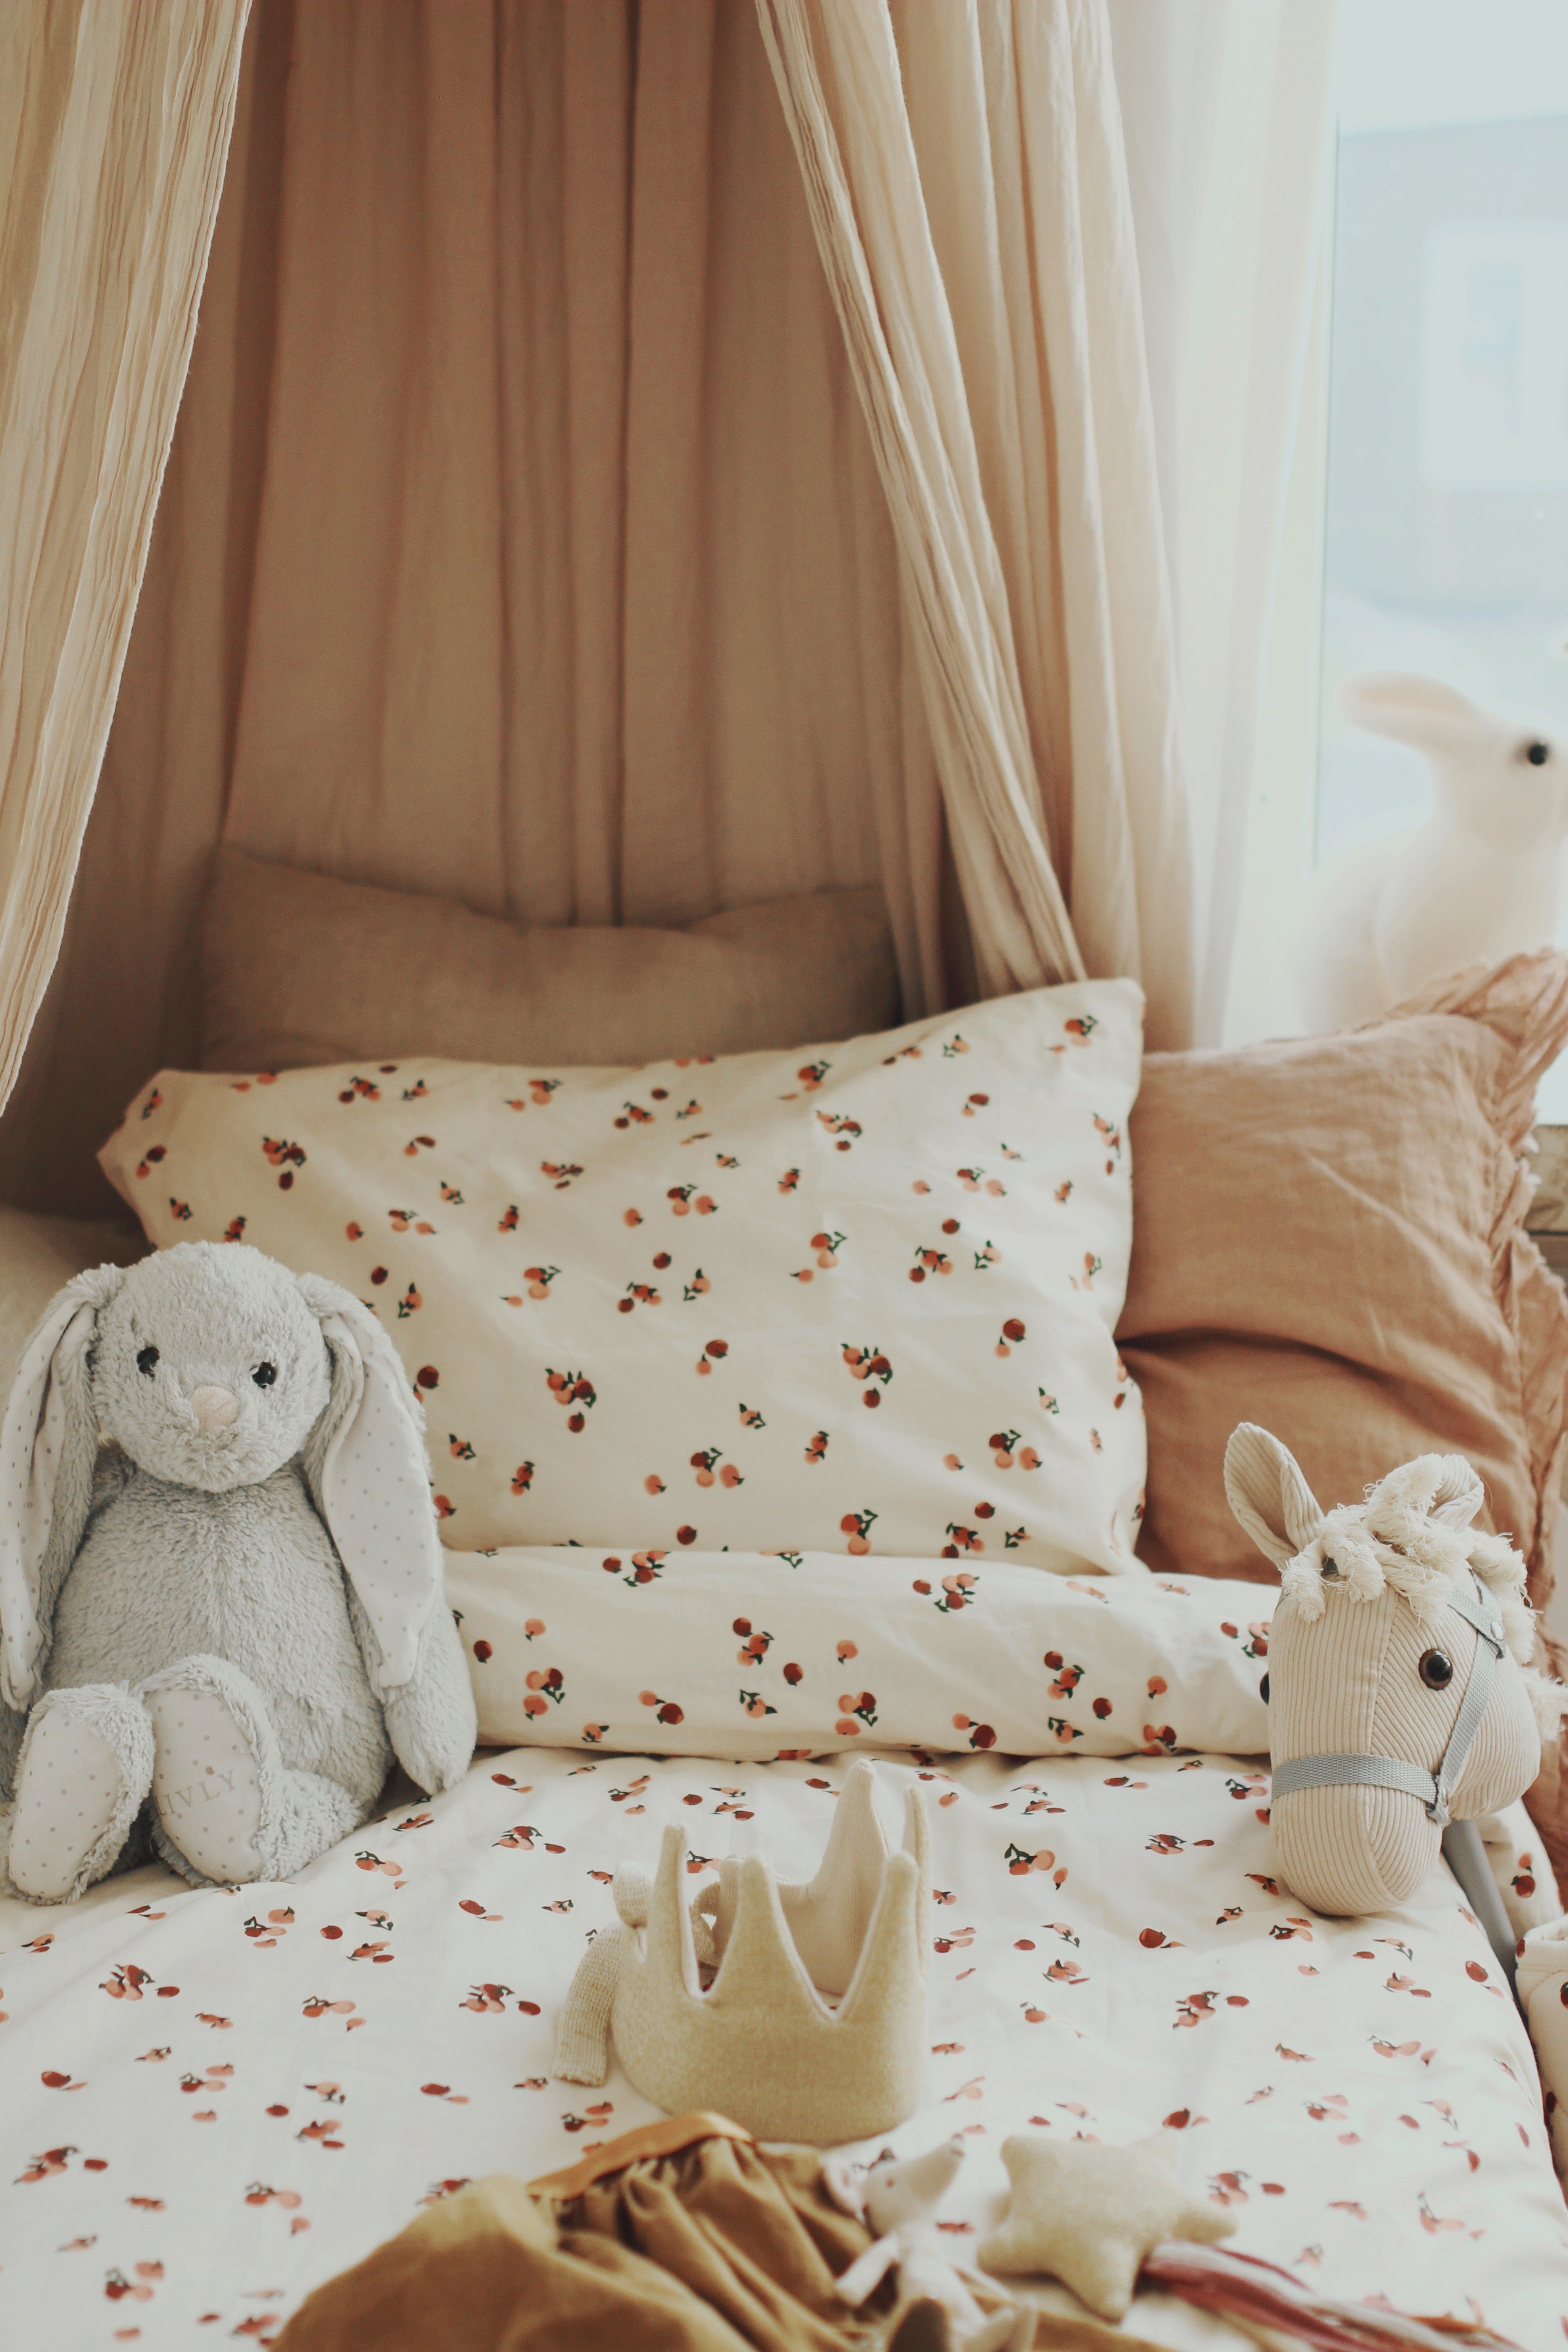 'Cute Bed Linen For Children’s Bedrooms' The Handbook